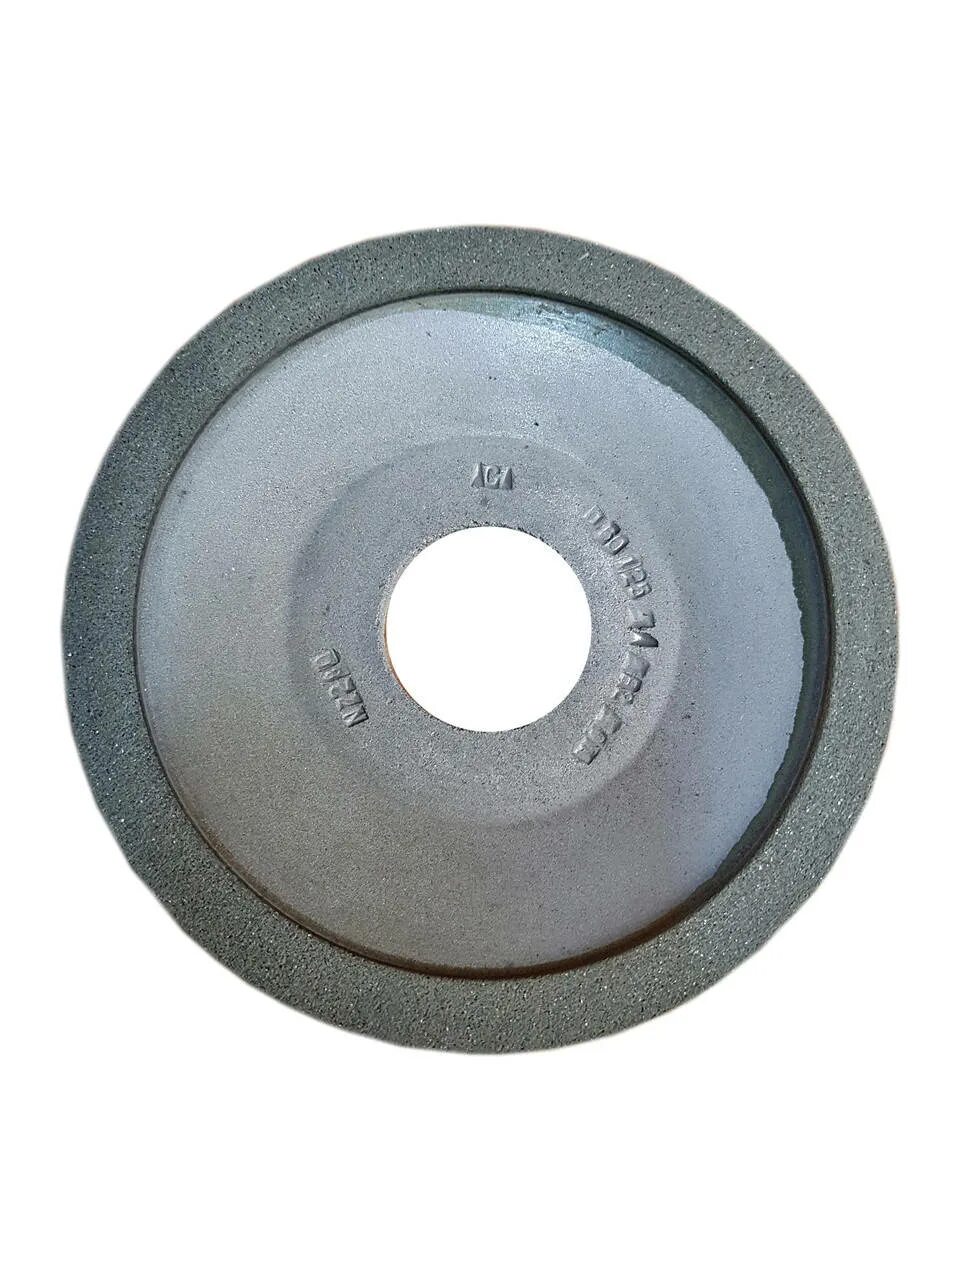 Алмазная тарелка. Алмазный диск с посадочным отверстием 32 мм. Диск алмазный для заточки 100 тарелка. Алмазная чашка для заточки диаметром 130-150 мм. Круг заточной алмазный тарелка.